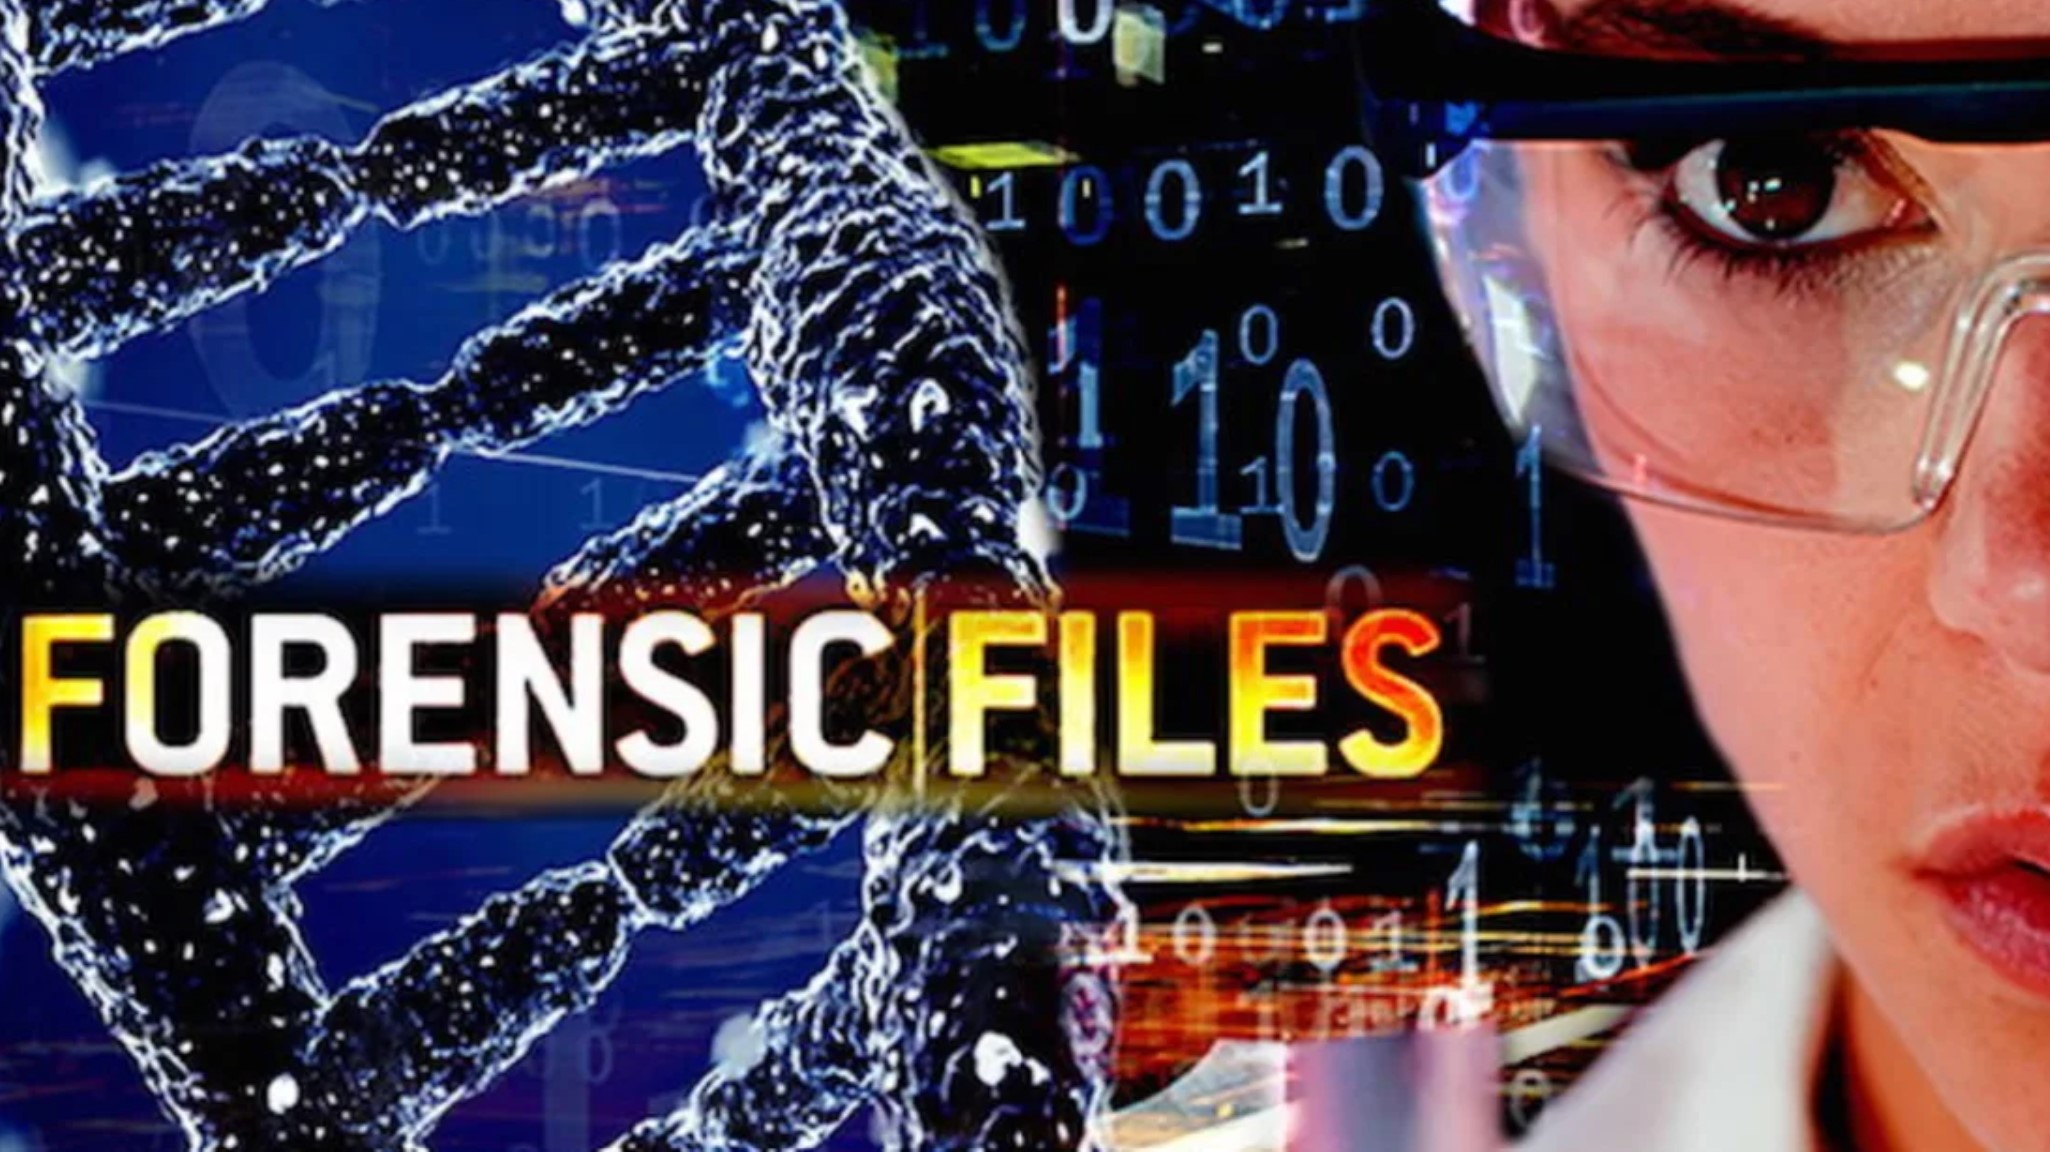 Forensic Files, YouTube: https://www.youtube.com/show/SC1WEkWGjKN_IJ6rYmCSNPCg?season=1